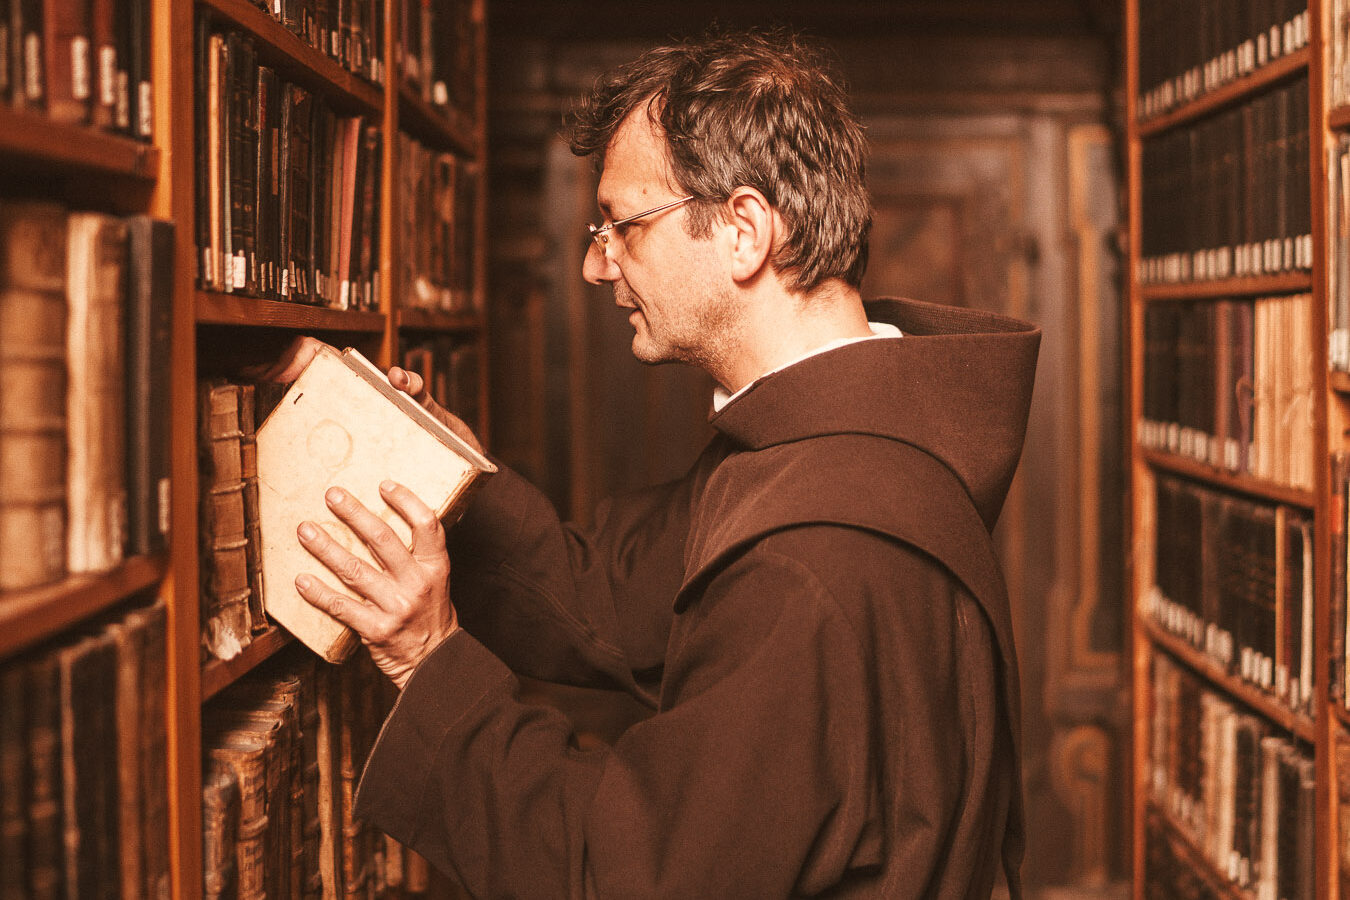 Franziskaner räumt Buch in Bibliothek auf